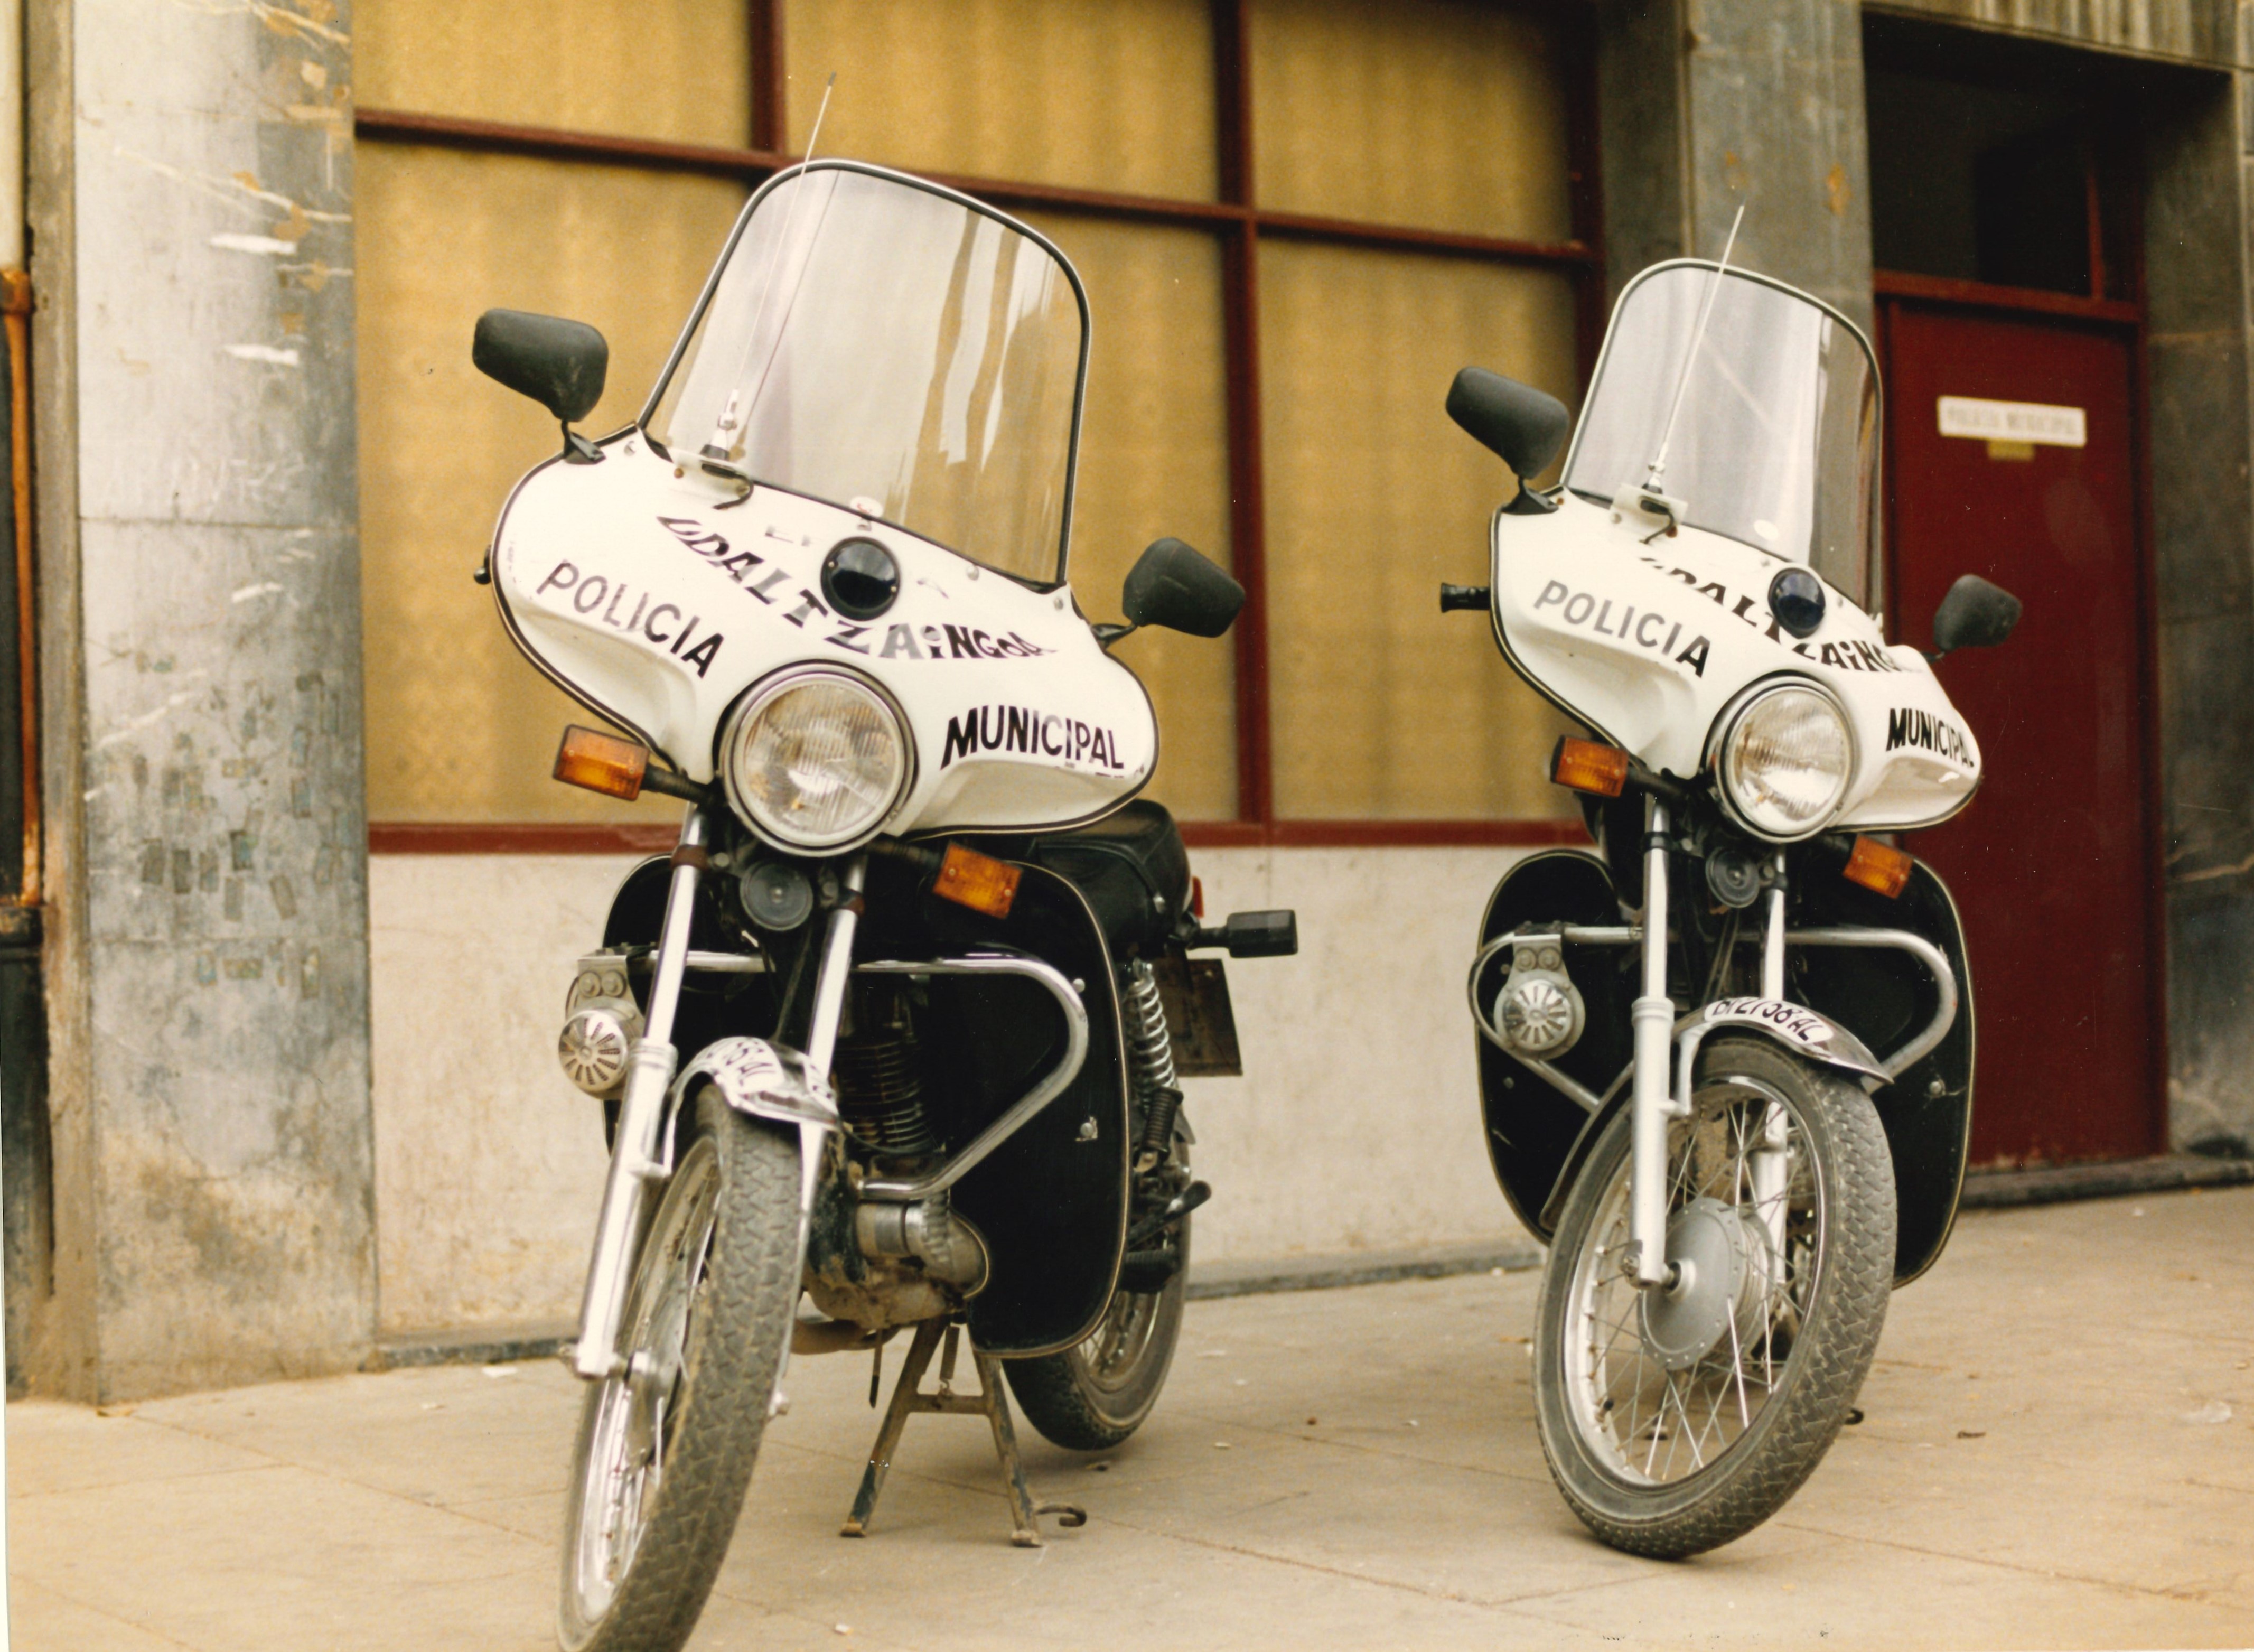 Dos motocicletas de la policía municipal de Ermua, son blancas y negras. La parte delantera alrededor del foco central y debajo de la pantalla de la moto es blanca y en letras negras se puede leer "policía municipal - udaltzaingoa. Las ruedas son altas y finas, tienen guardarbarros, dos retrovisores y dos indicadores delanteros de luz naranja. Están apoyadas sobre la pata de cabra que tiene cada motocicleta. 